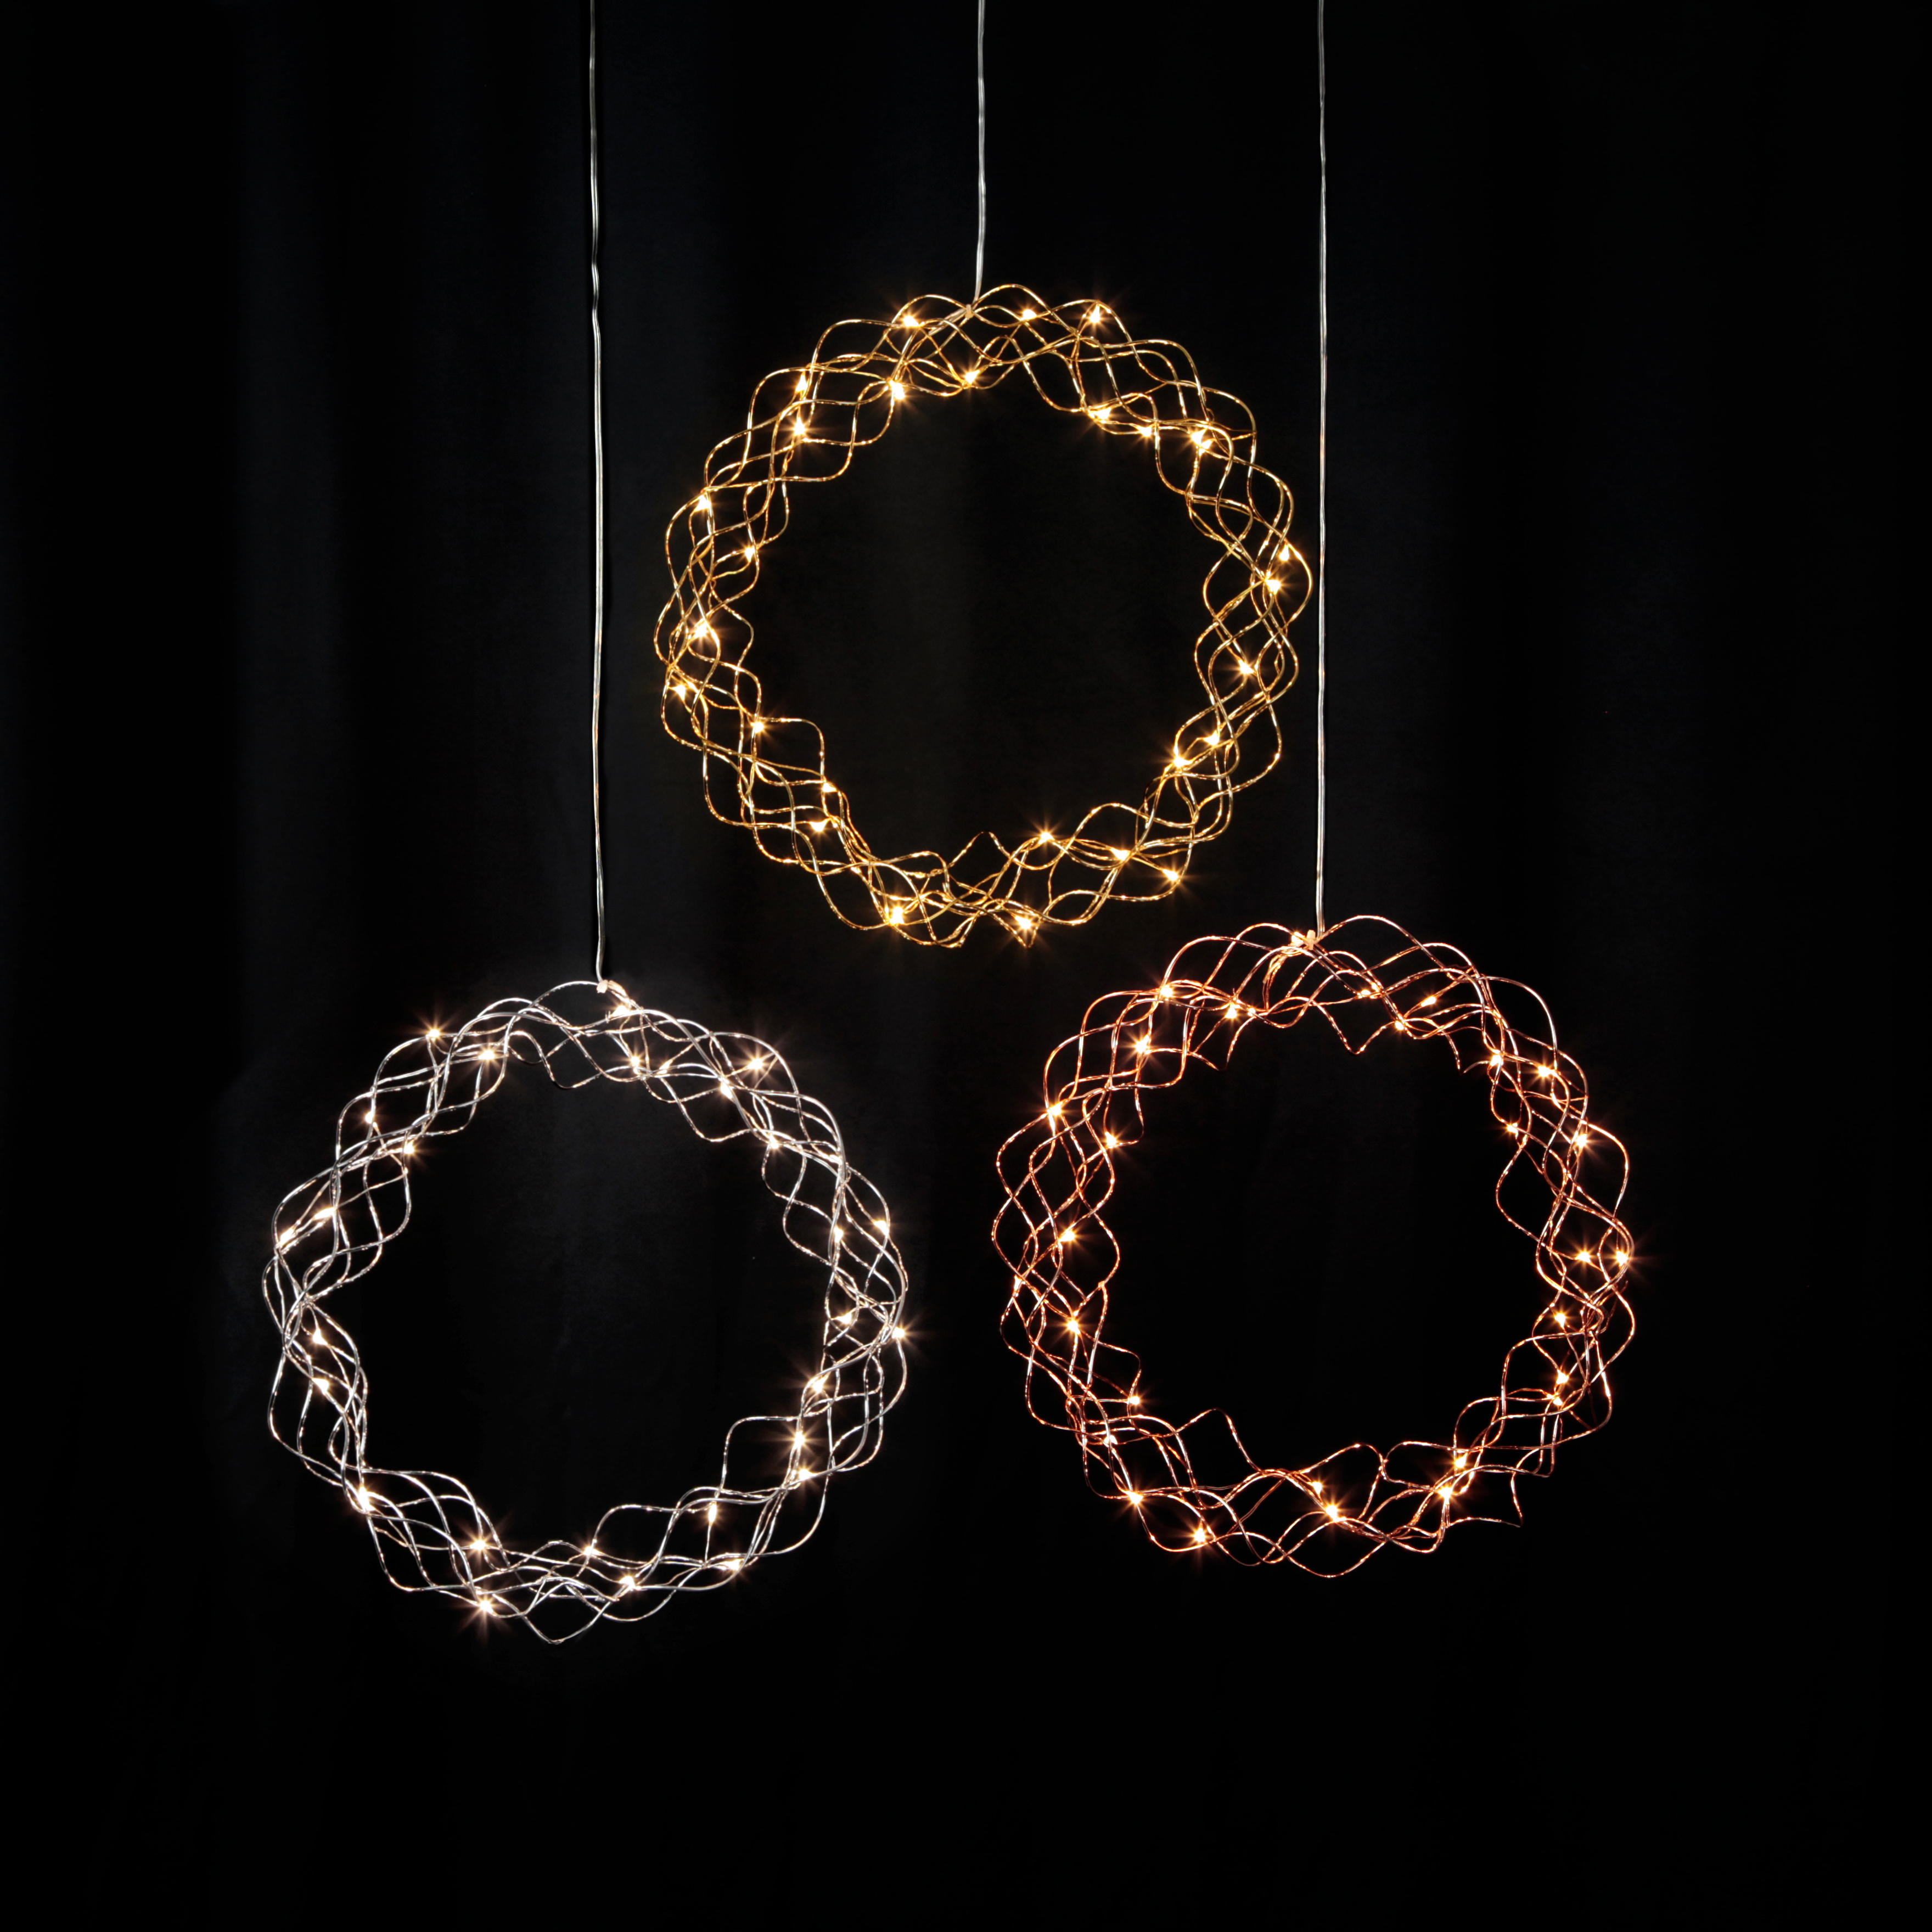 LED Lichterkranz Curly von Star Trading, Fensterlicht Weihnachten